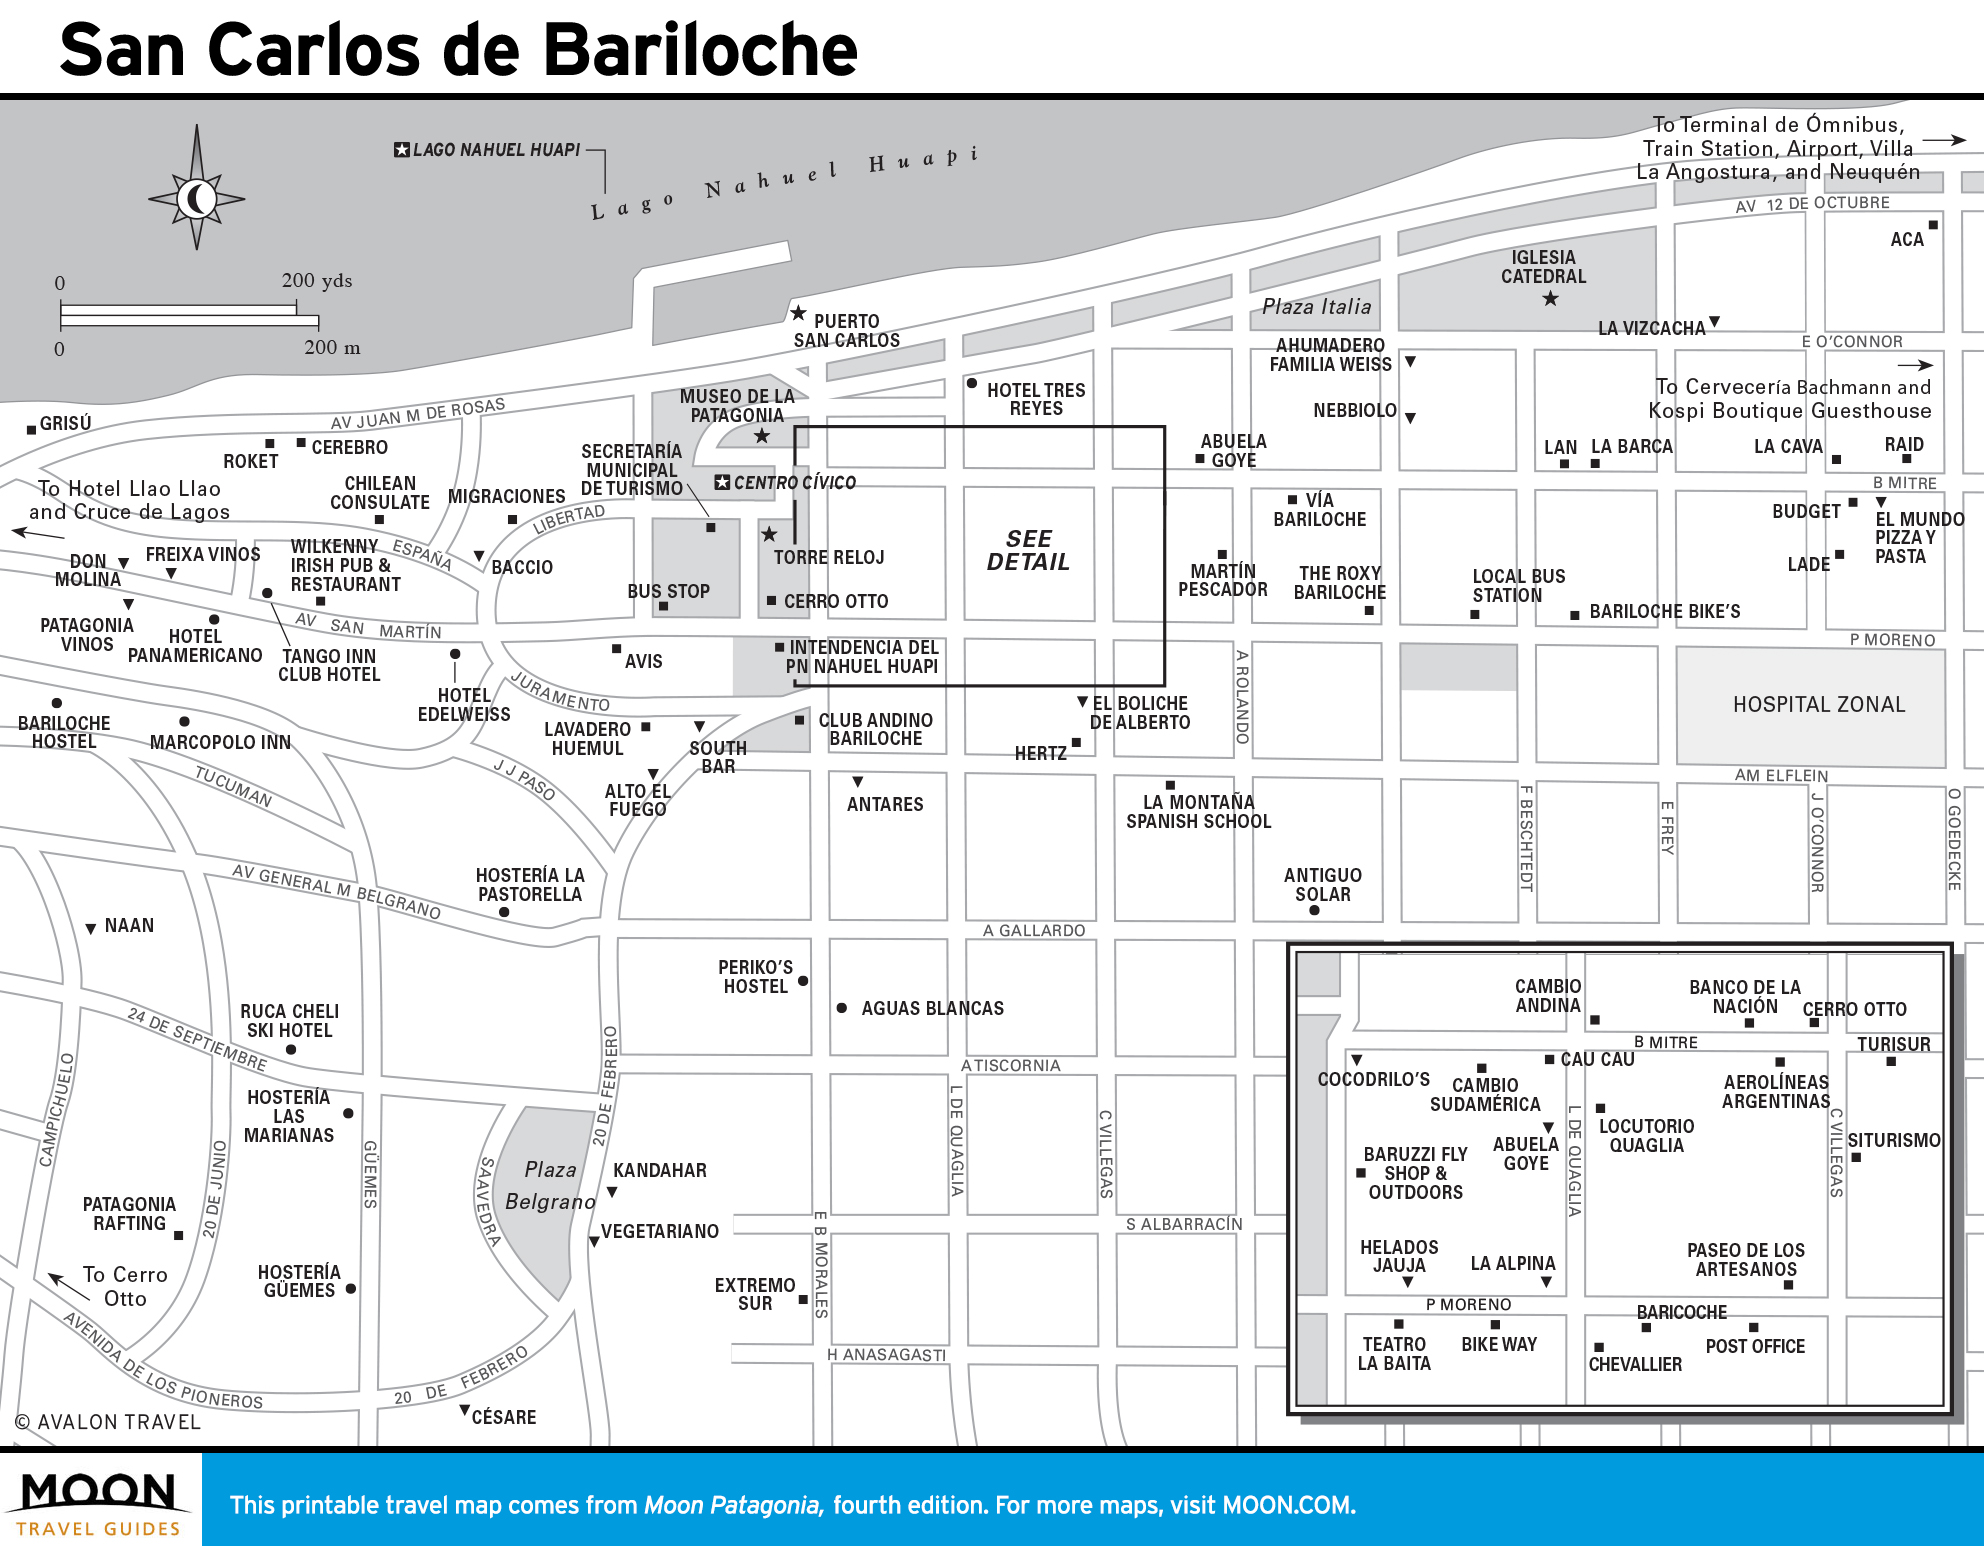 San Carlos de Bariloche map, Argentina